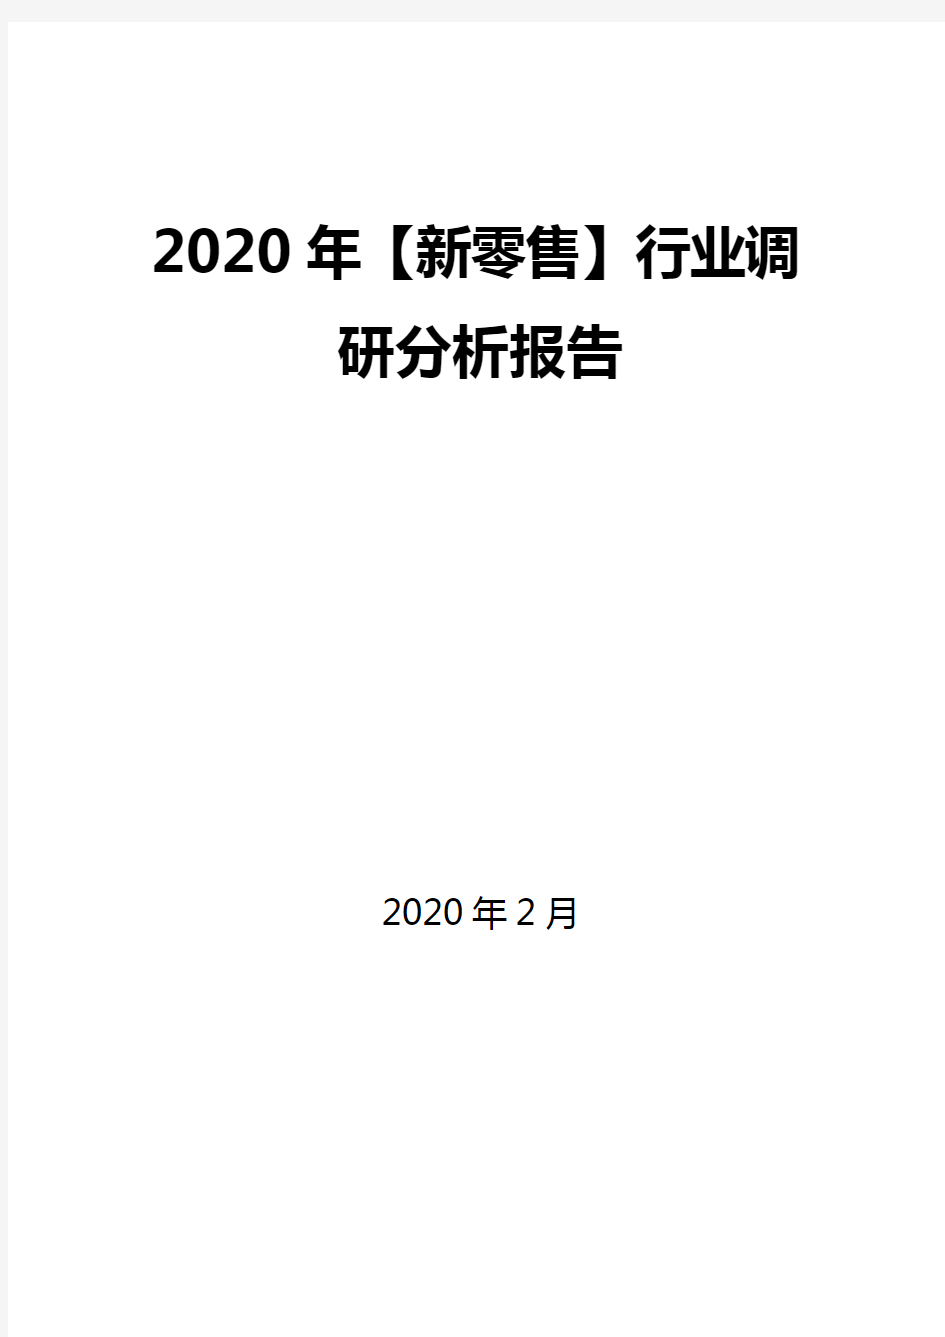 2020年【新零售】行业调研分析报告 